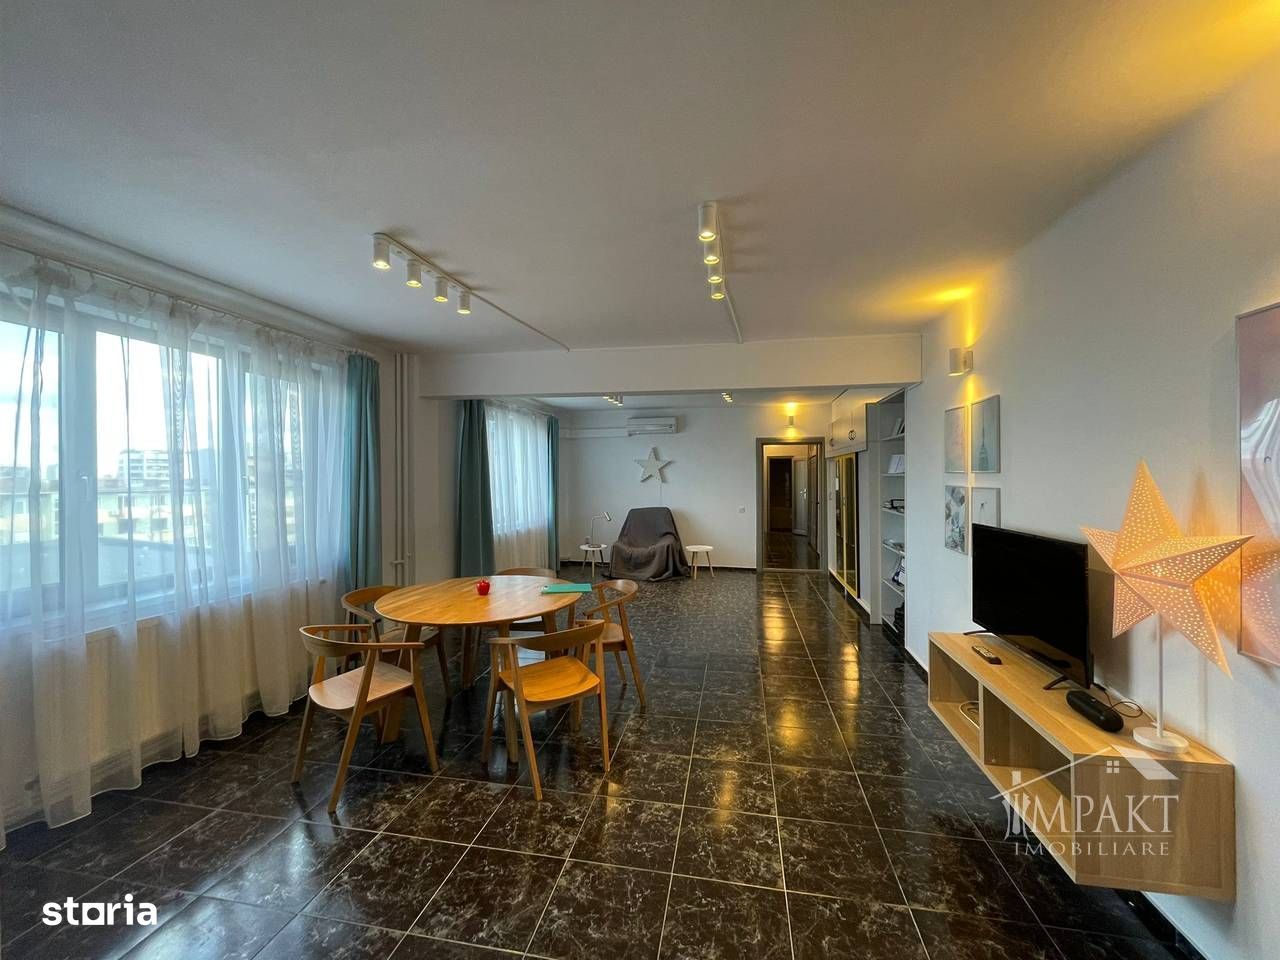 Apartament 3 camere, confort sporit in centrul orasului Cluj-Napoca